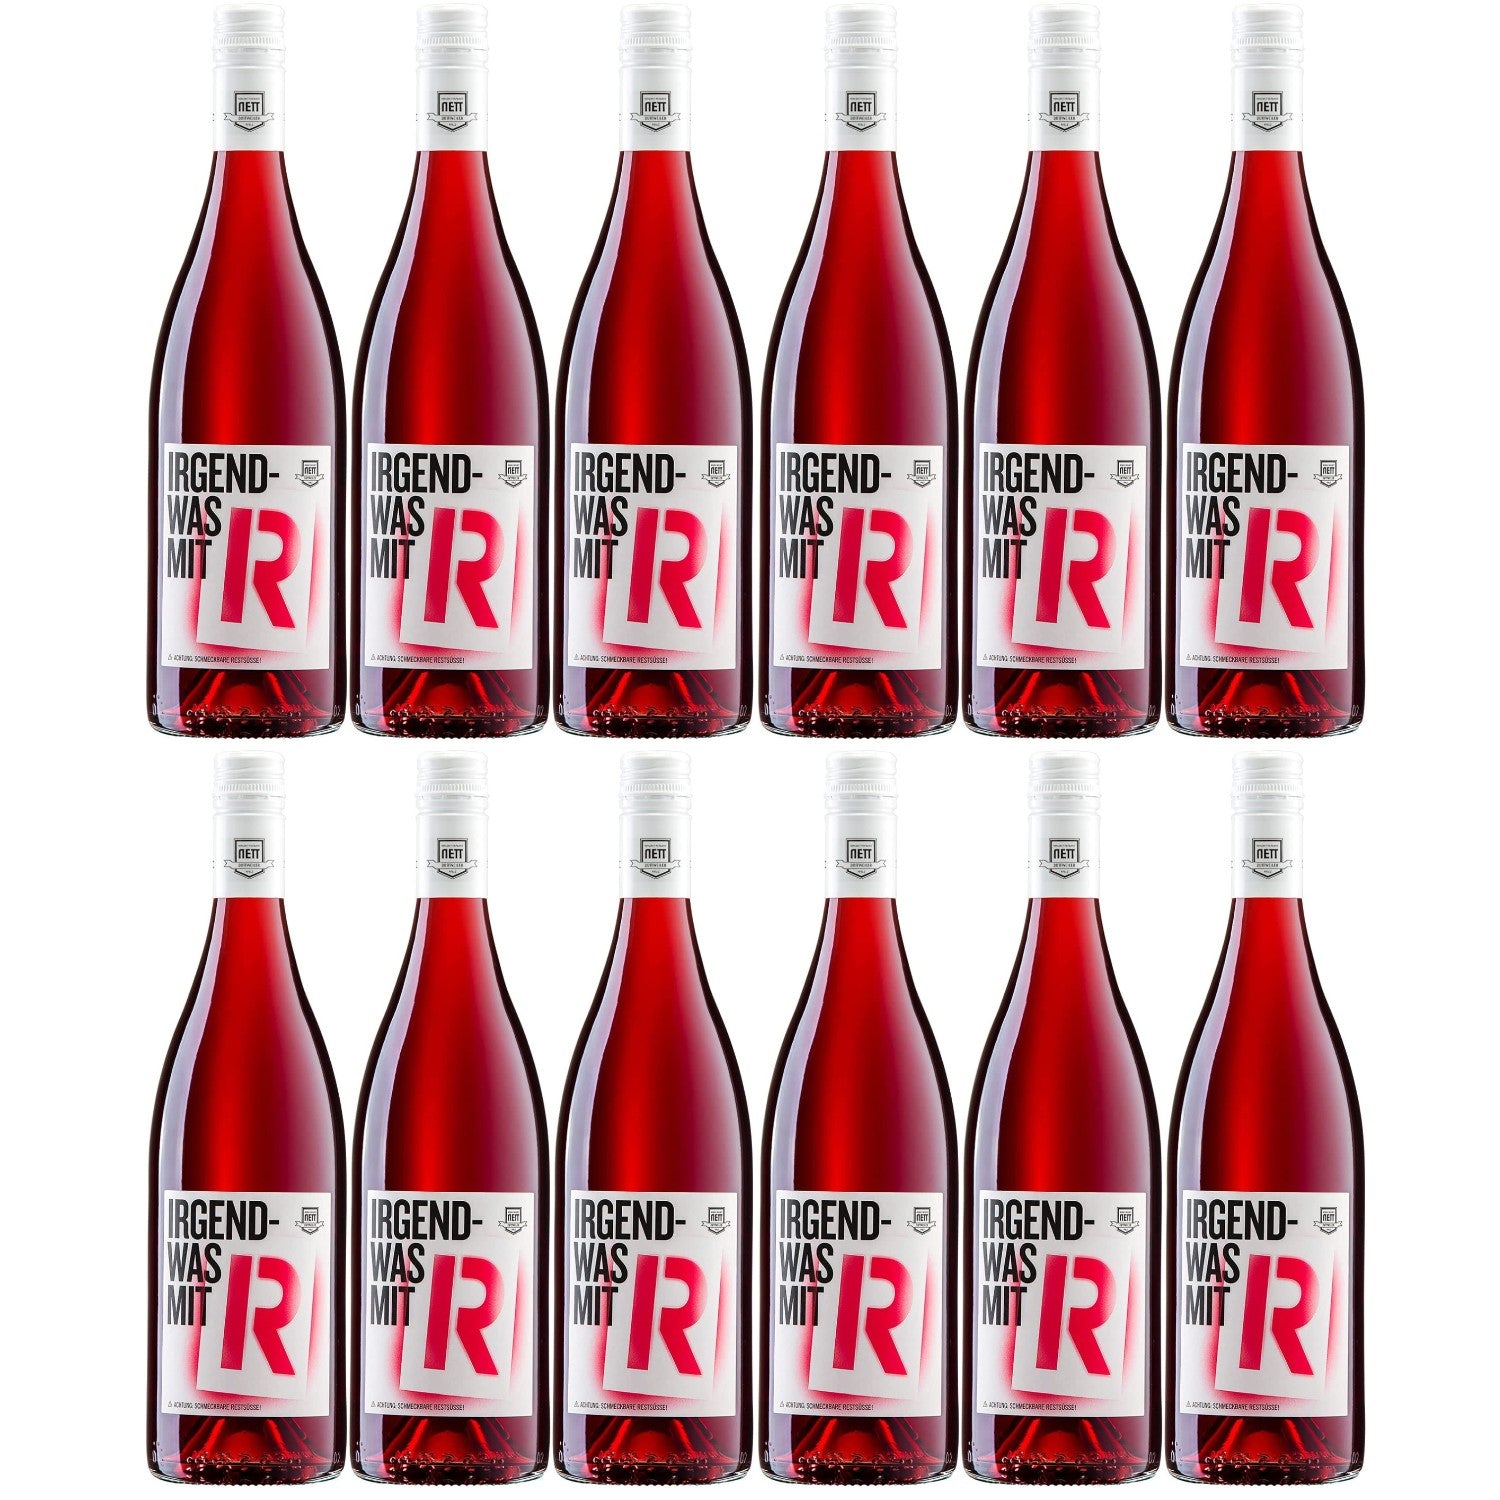 Weingut Bergdolt-Reif & Nett Irgendwas mit R Rosé Cuvee Rosé Dornfelder Spätburgunder Deutschland restsüß Roséwein (12 x 0,75l)